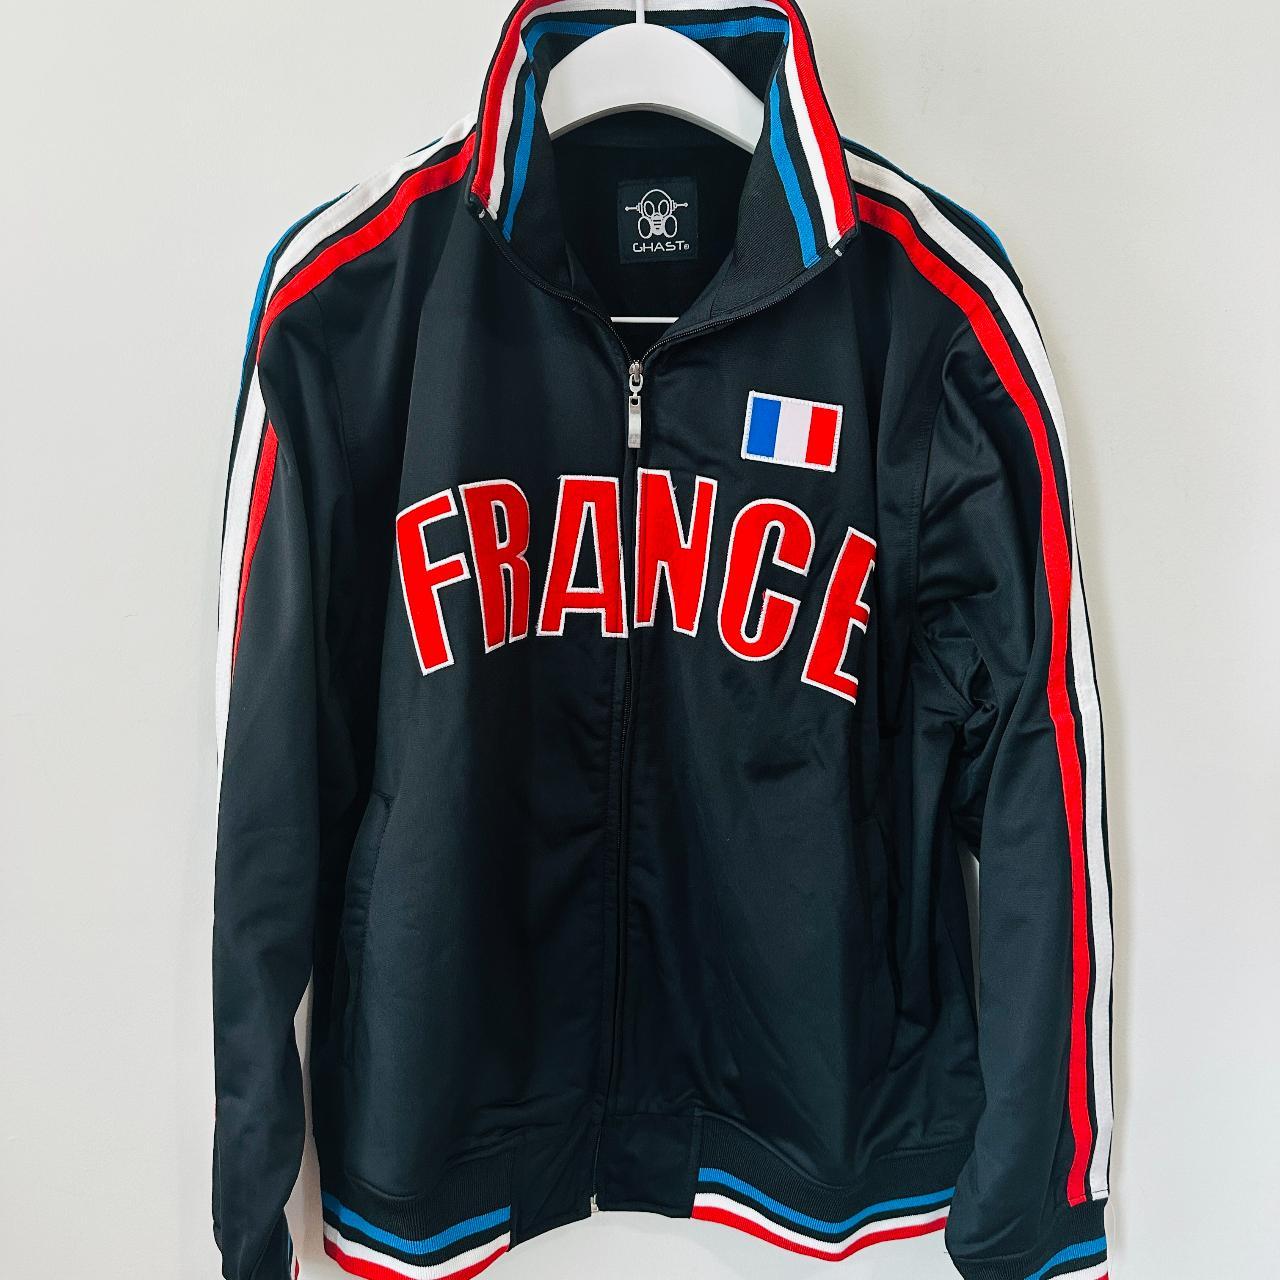 BRAND NEW FRANCE Warm-Up Soccer / Basketball Jacket... - Depop